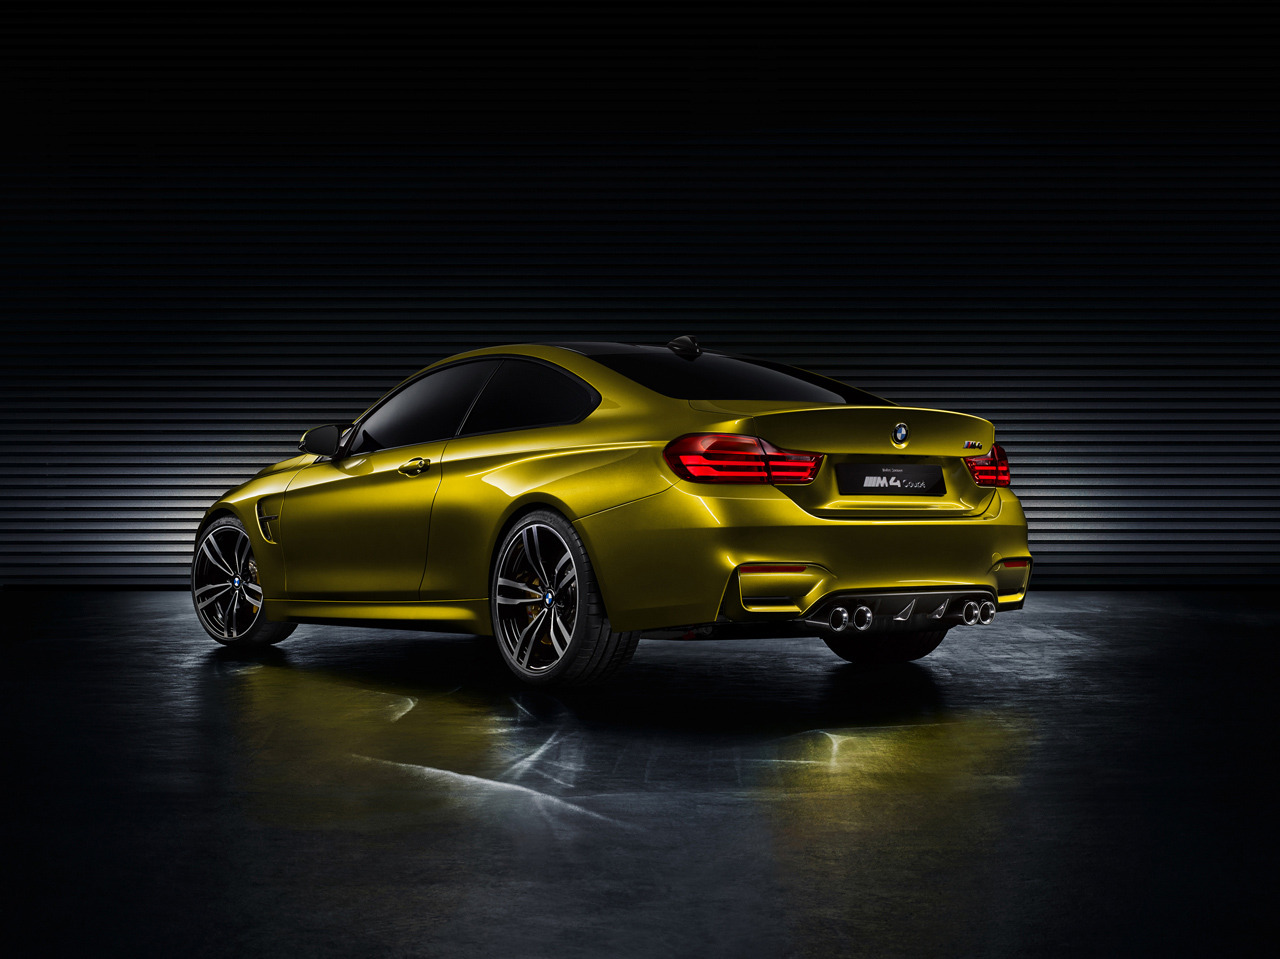 Déjate sorprender por el BMW M4 Concept